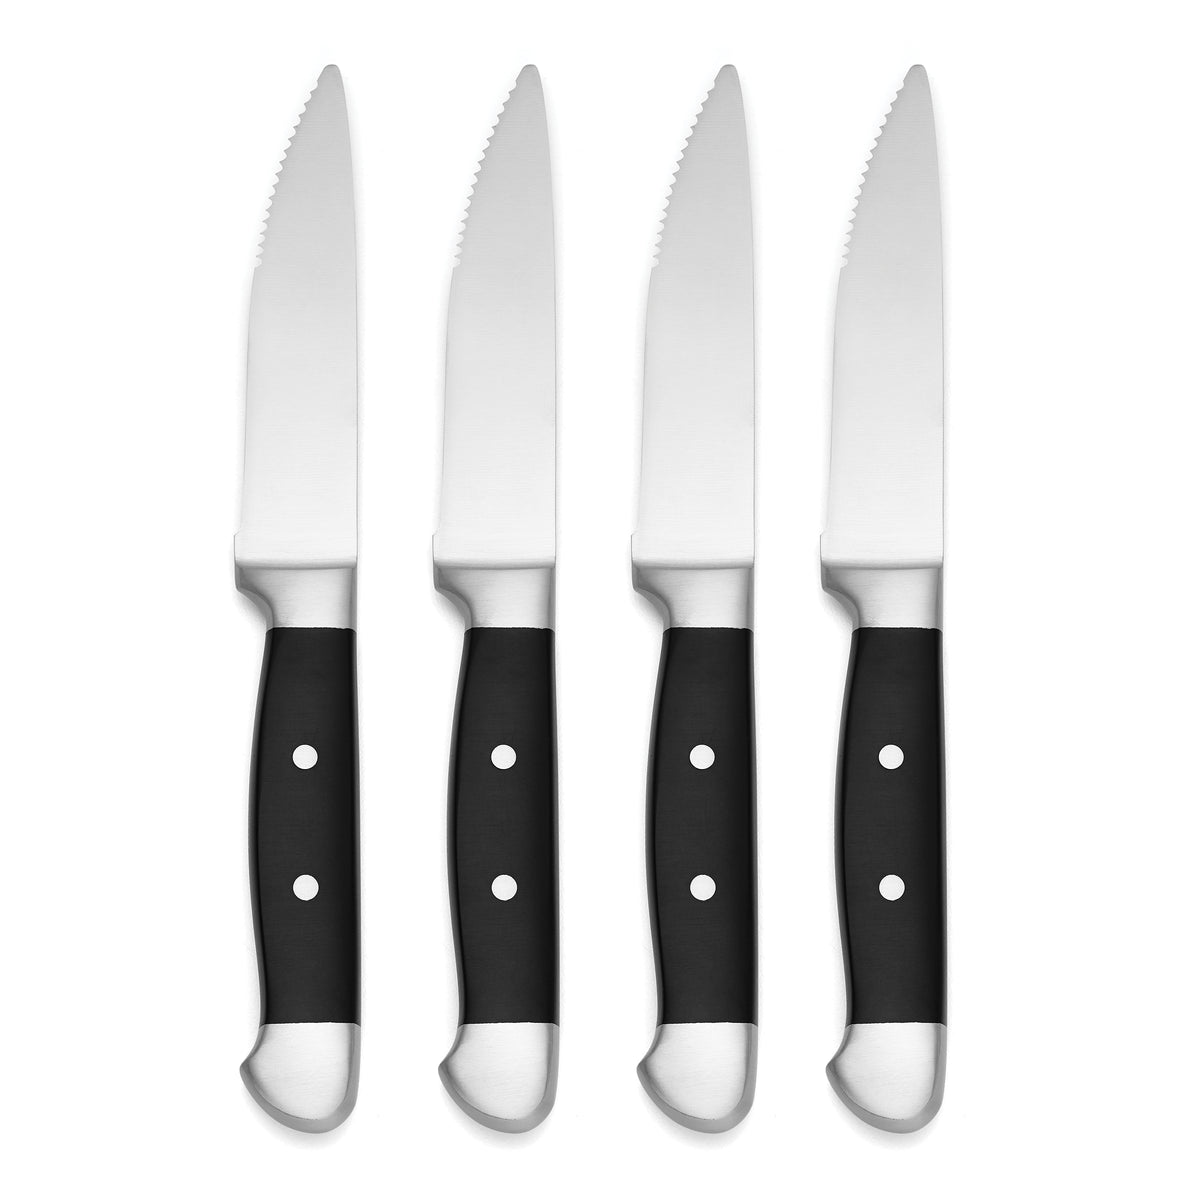 Oneida B907KSSFW Steak Knife, 10-1/4 Long, 12/pk